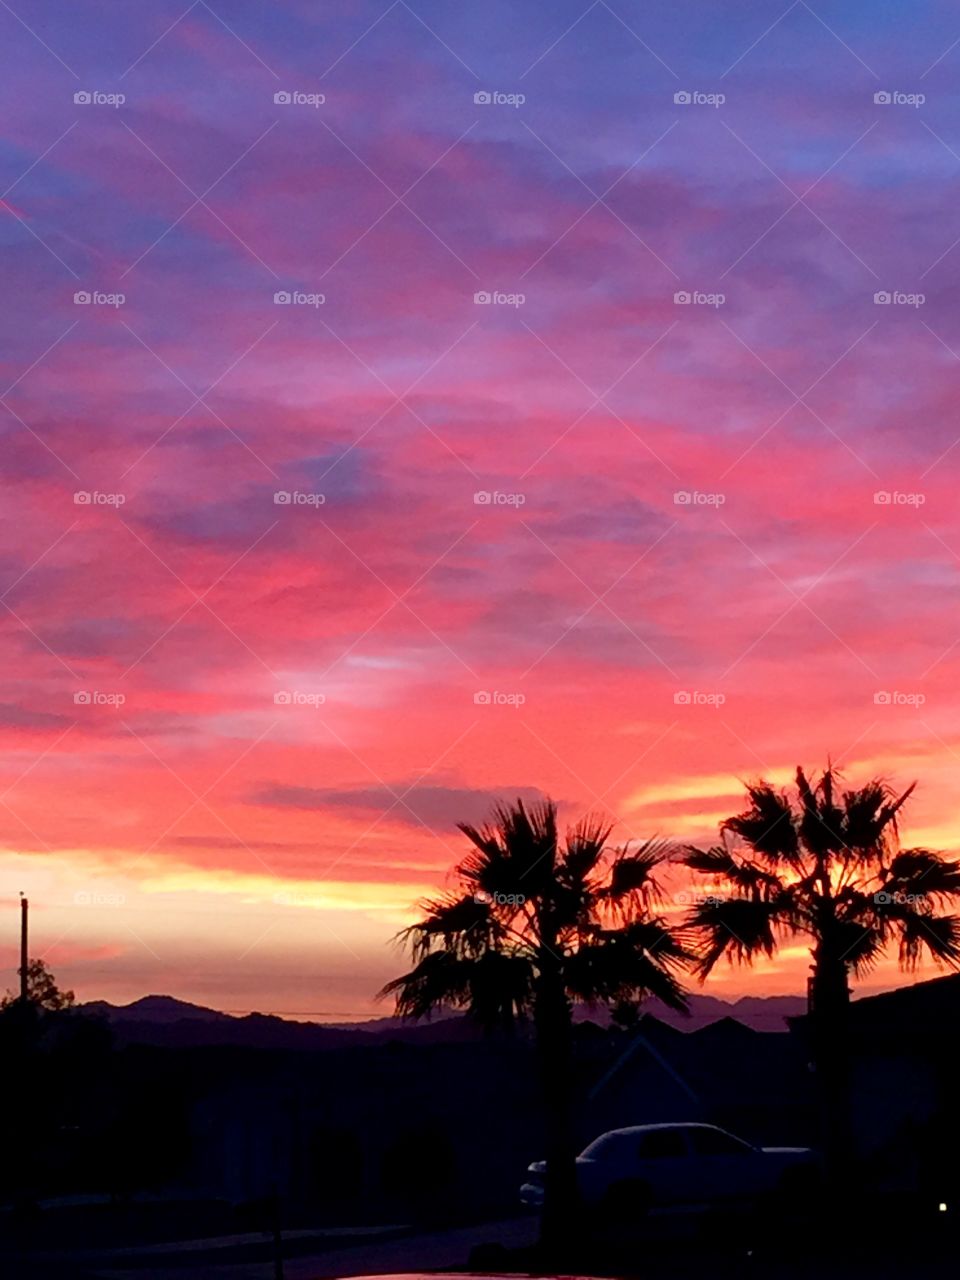 Arizona Sunset on the Driveway